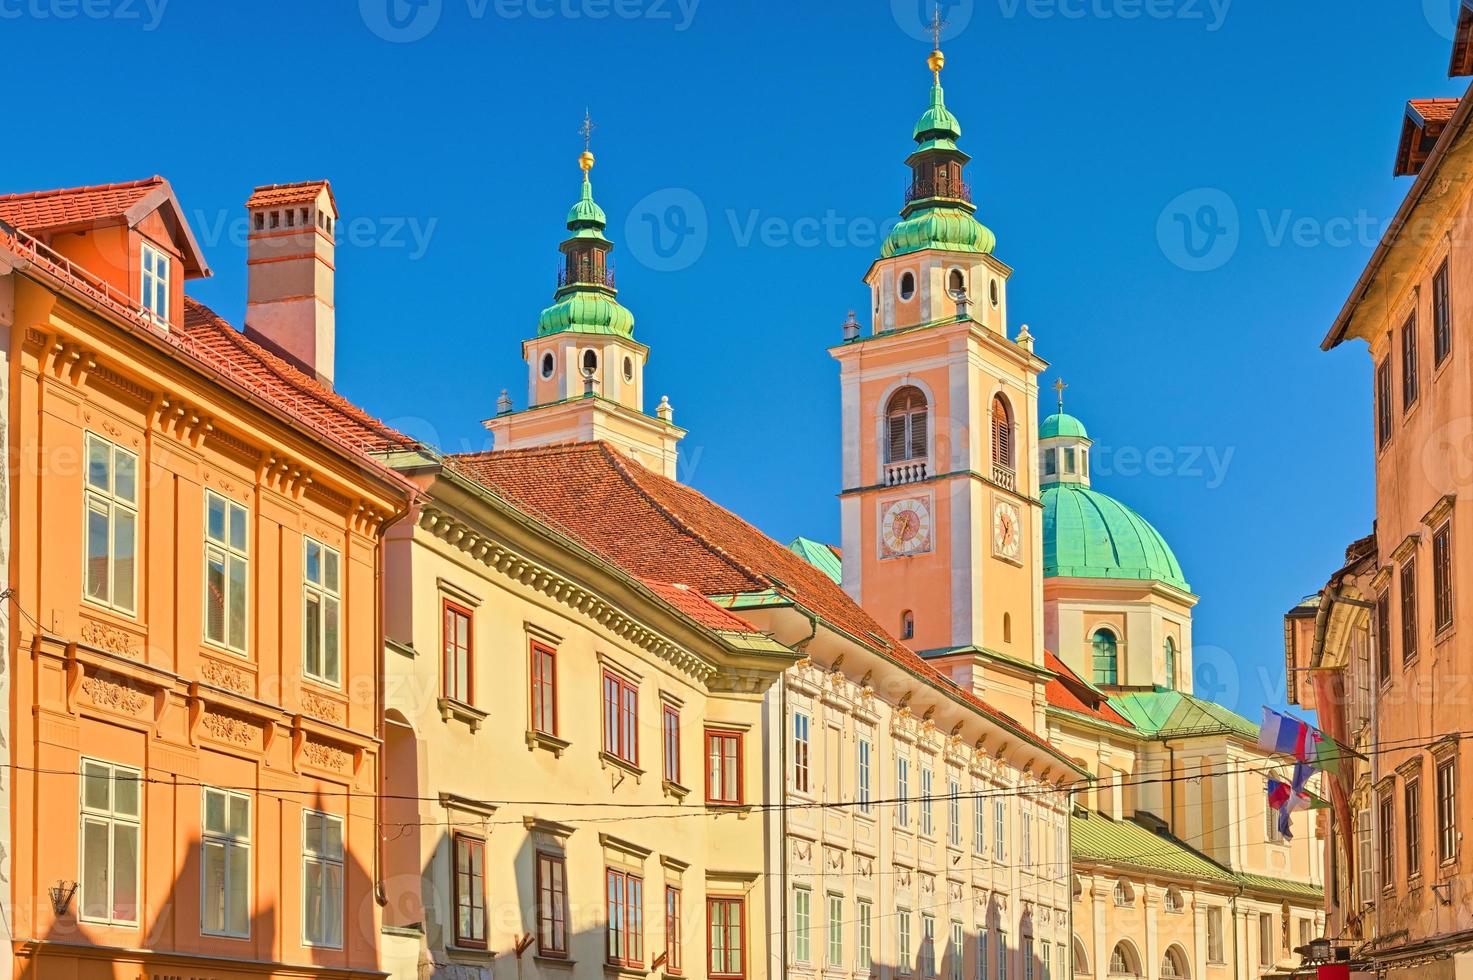 historisk arkitektur i gamla stan i ljubljana, slovenien foto